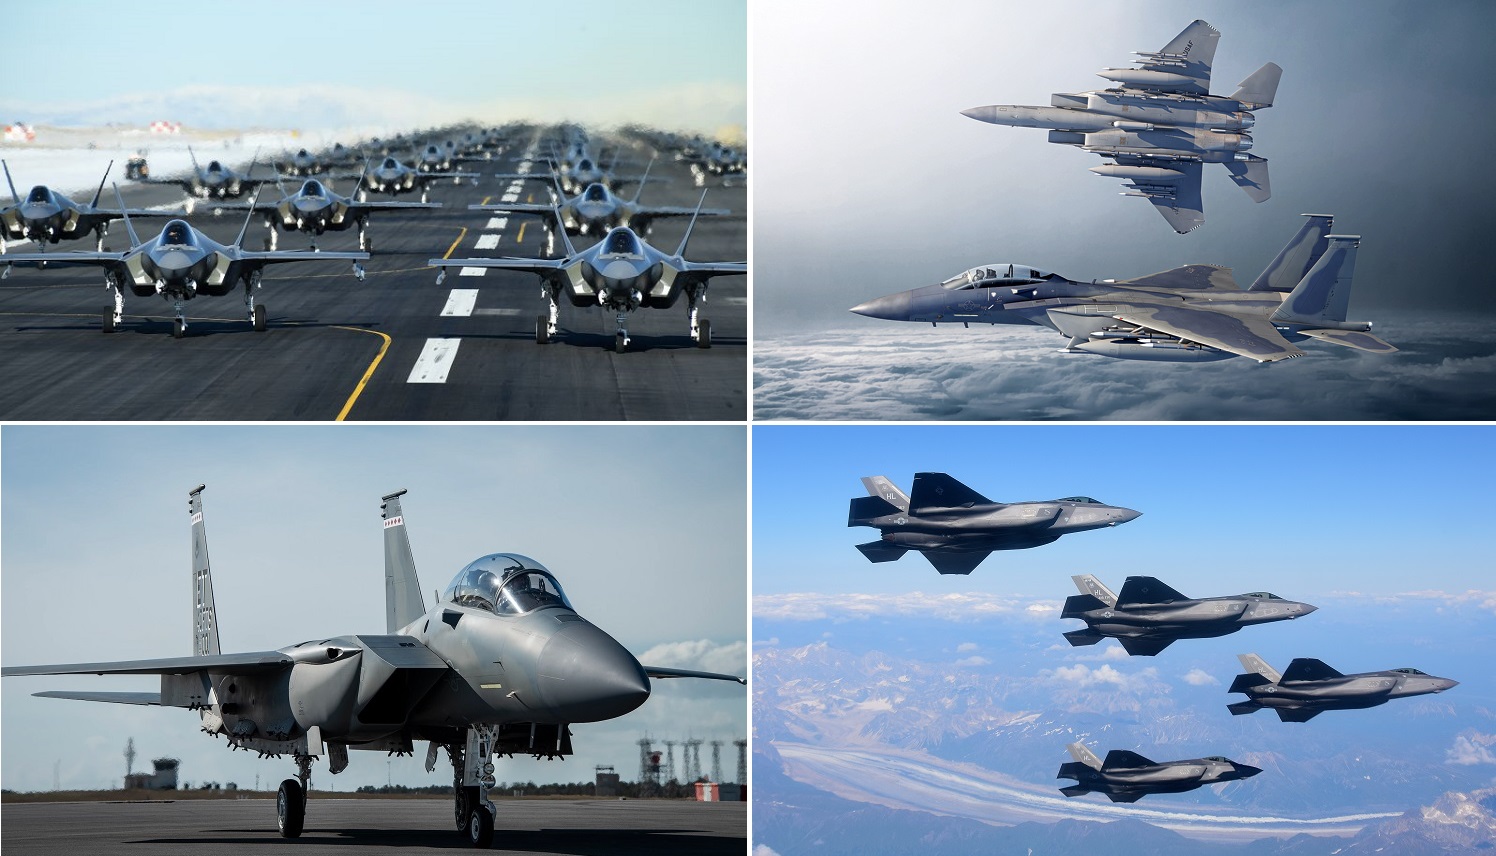 Las Fuerzas Aéreas de EE.UU. adquirirán 72 cazas por primera vez en su historia reciente: el servicio ha solicitado fondos para encargar 48 F-35 y 24 F-15EX mejorados.